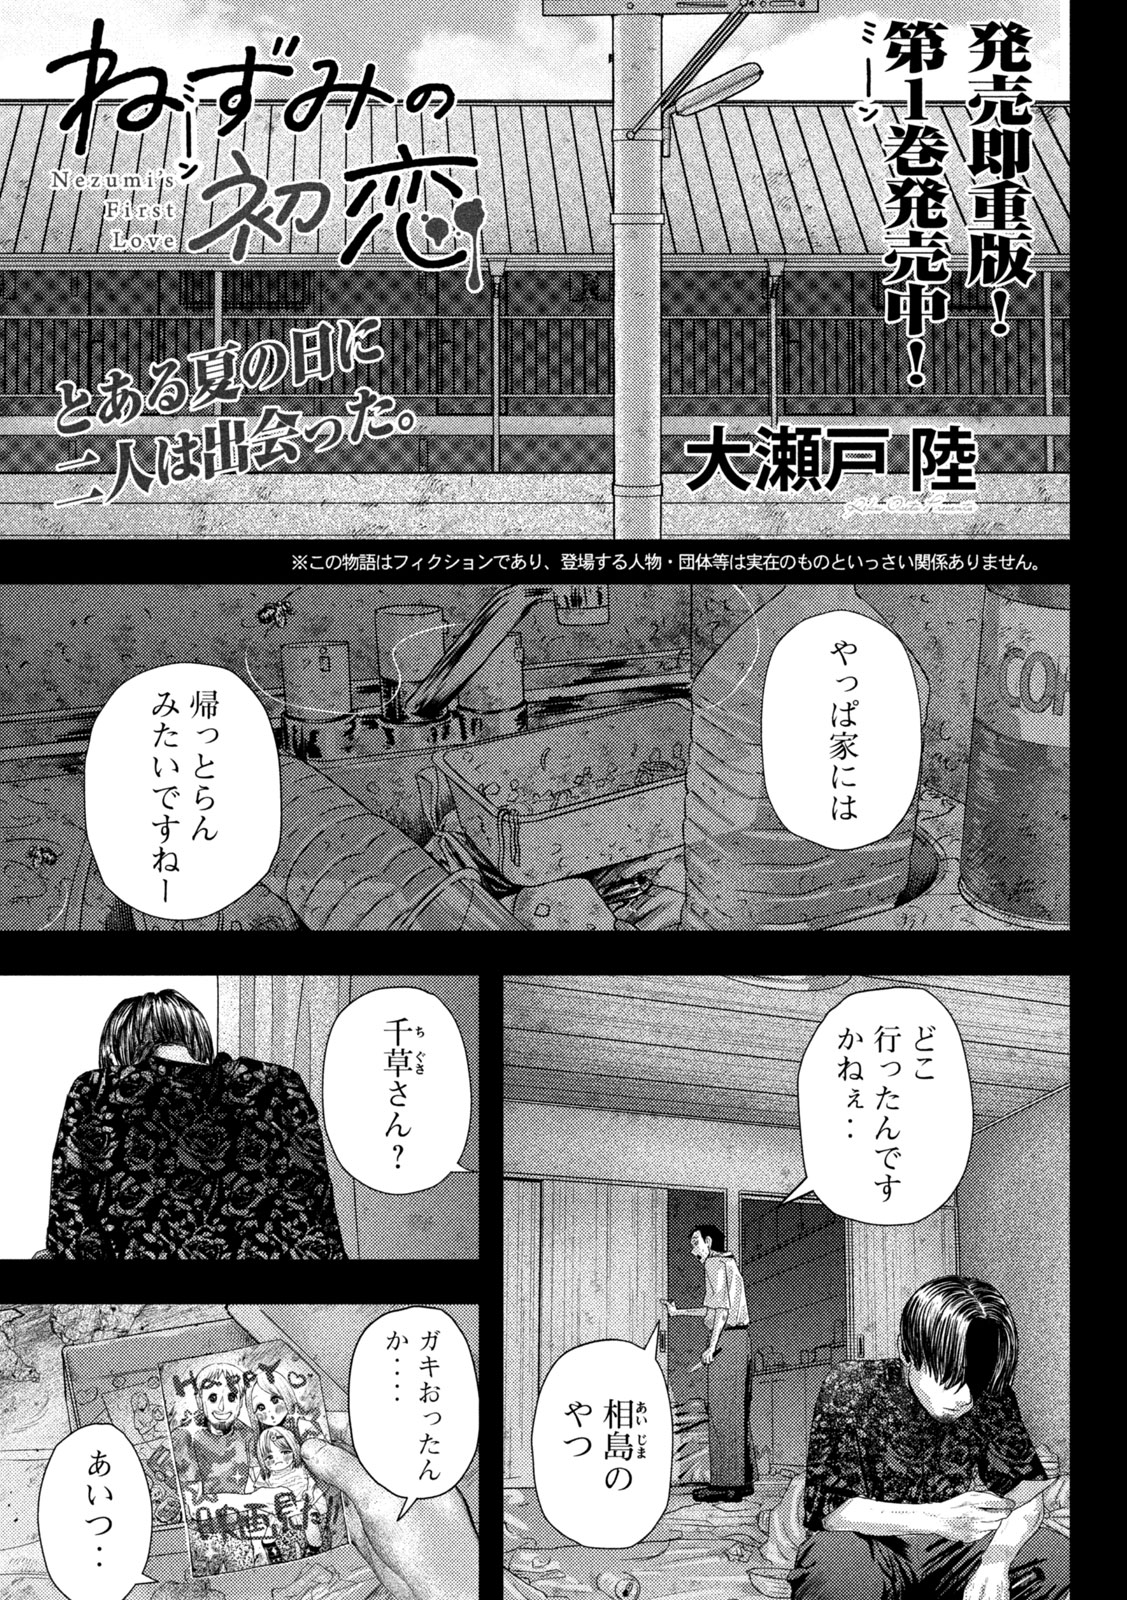 Nezumi no Koi - Chapter 19 - Page 1